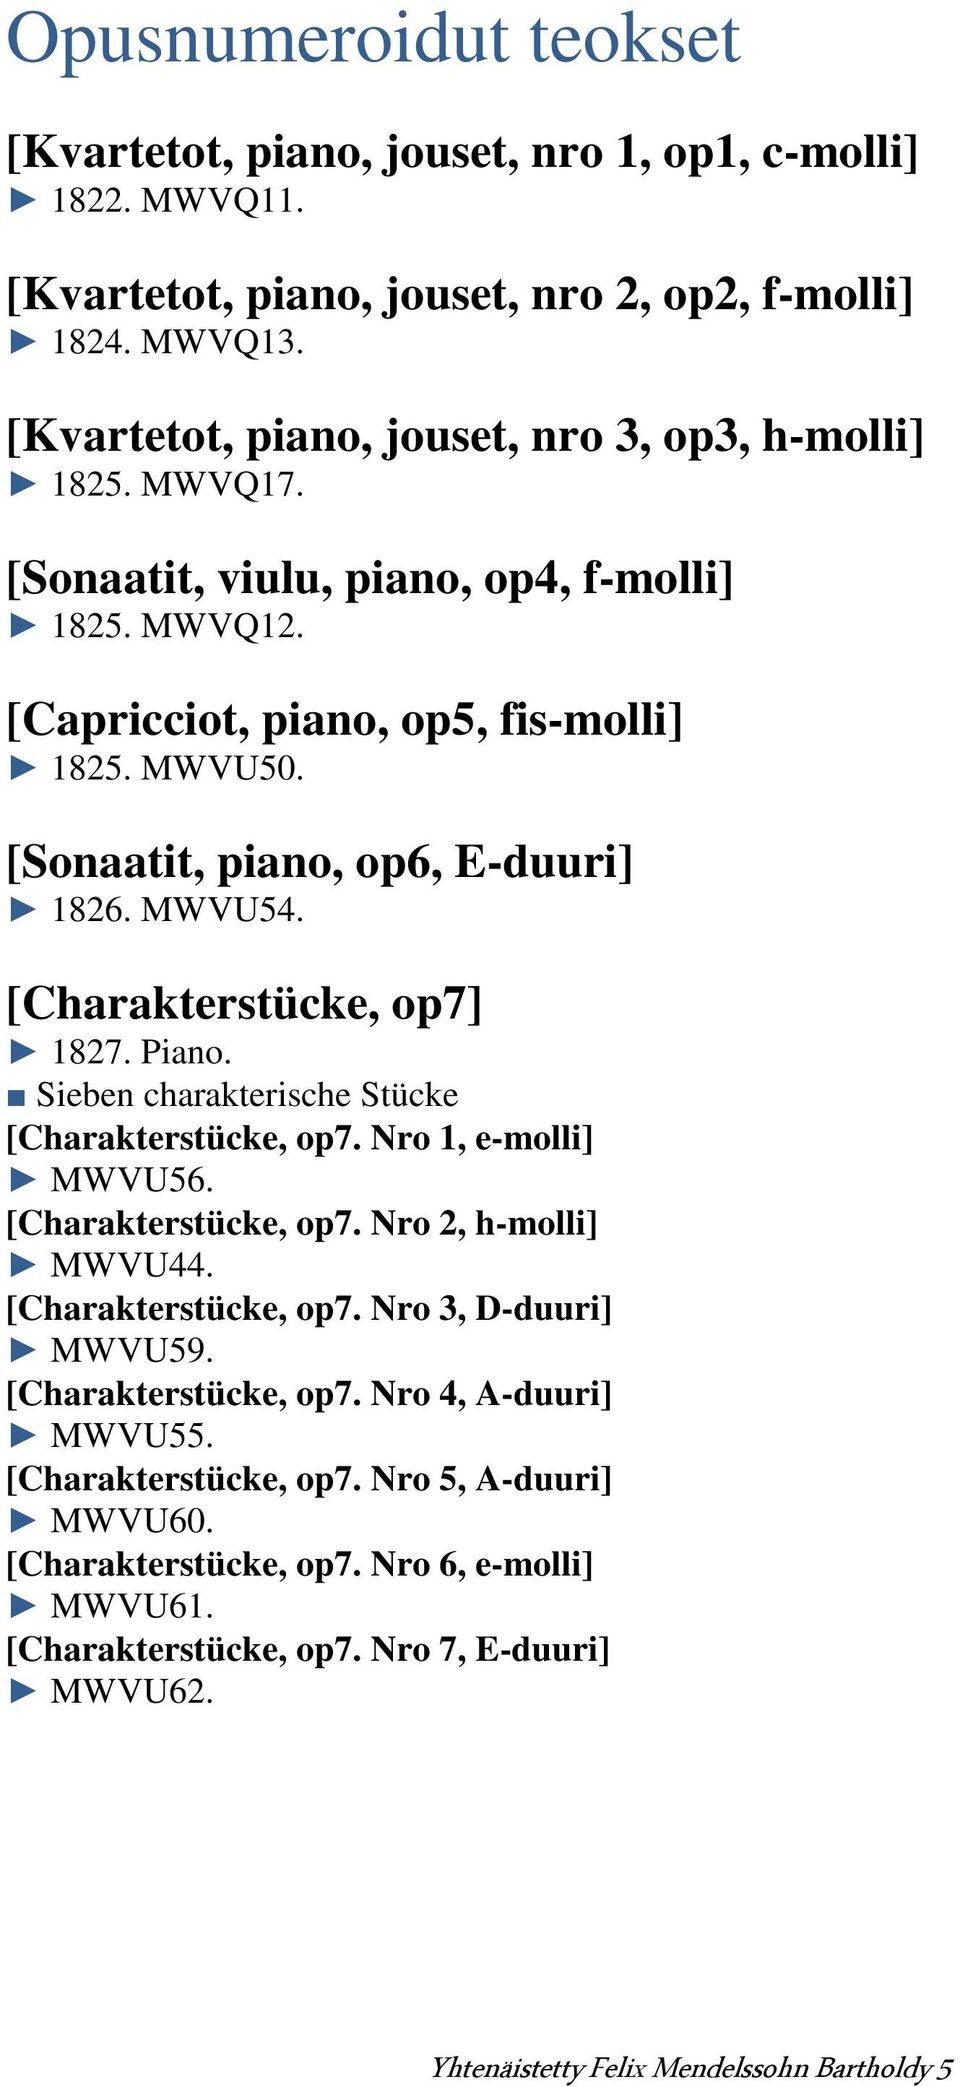 [Sonaatit, piano, op6, E-duuri] 1826. MWVU54. [Charakterstücke, op7] 1827. Piano. Sieben charakterische Stücke [Charakterstücke, op7. Nro 1, e-molli] MWVU56. [Charakterstücke, op7. Nro 2, h-molli] MWVU44.